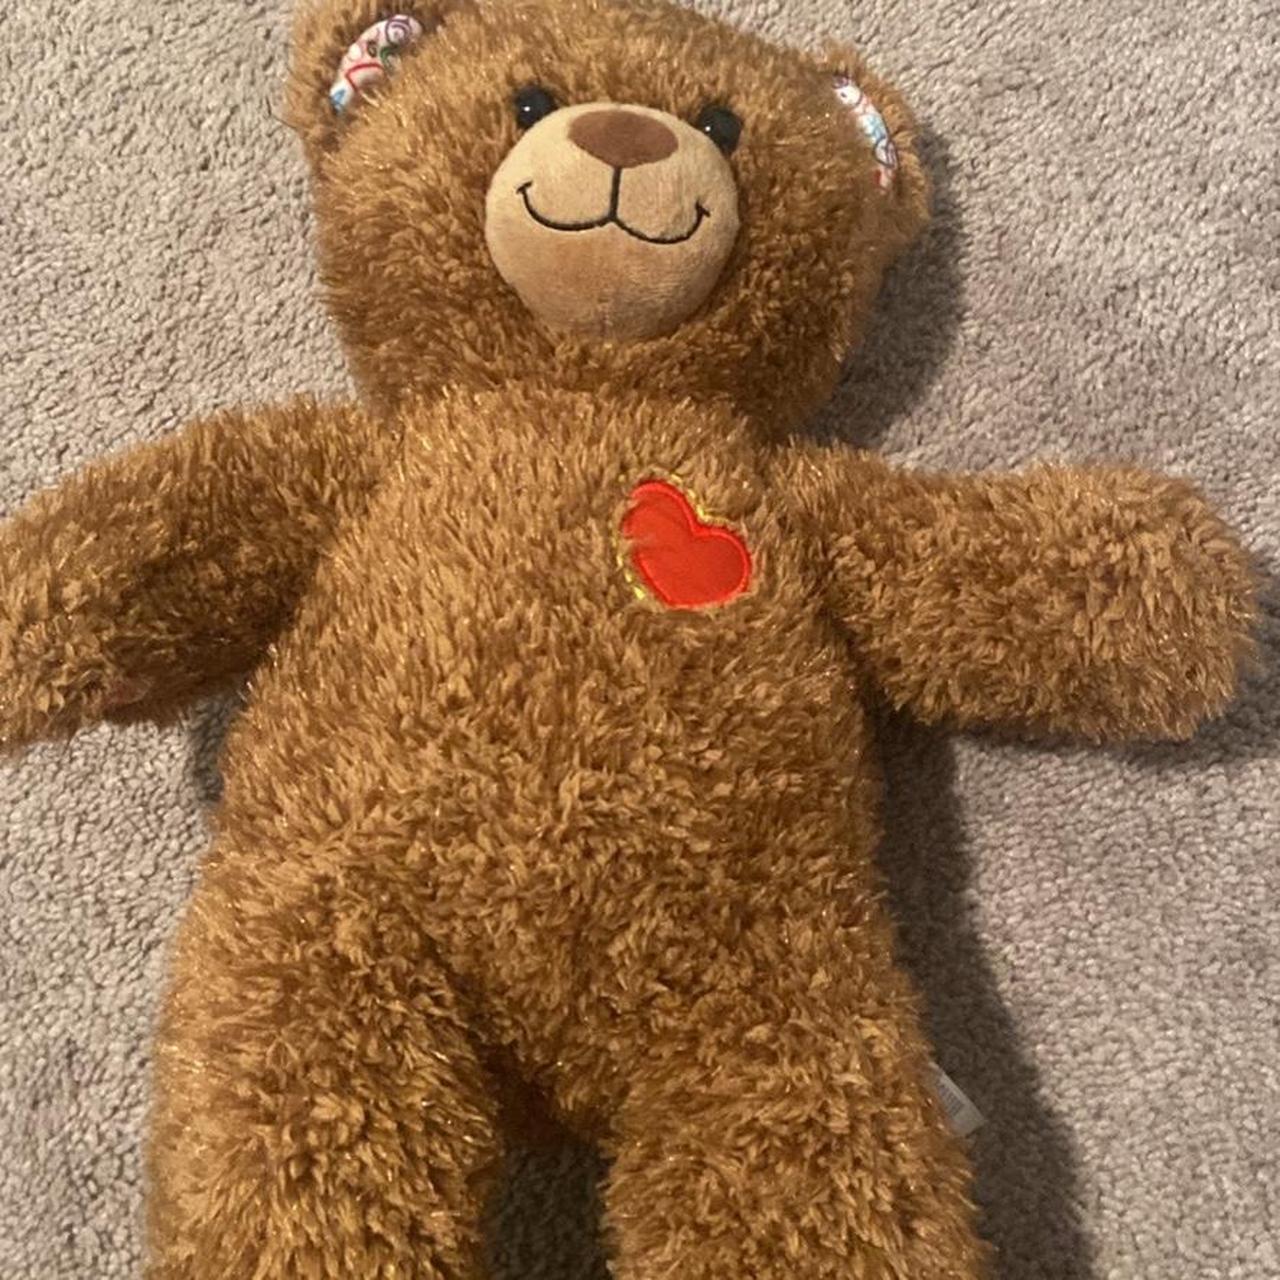 Build A Bear Brown Teddy Bear Stitched Eyes Stuffed Animal Plush Toy